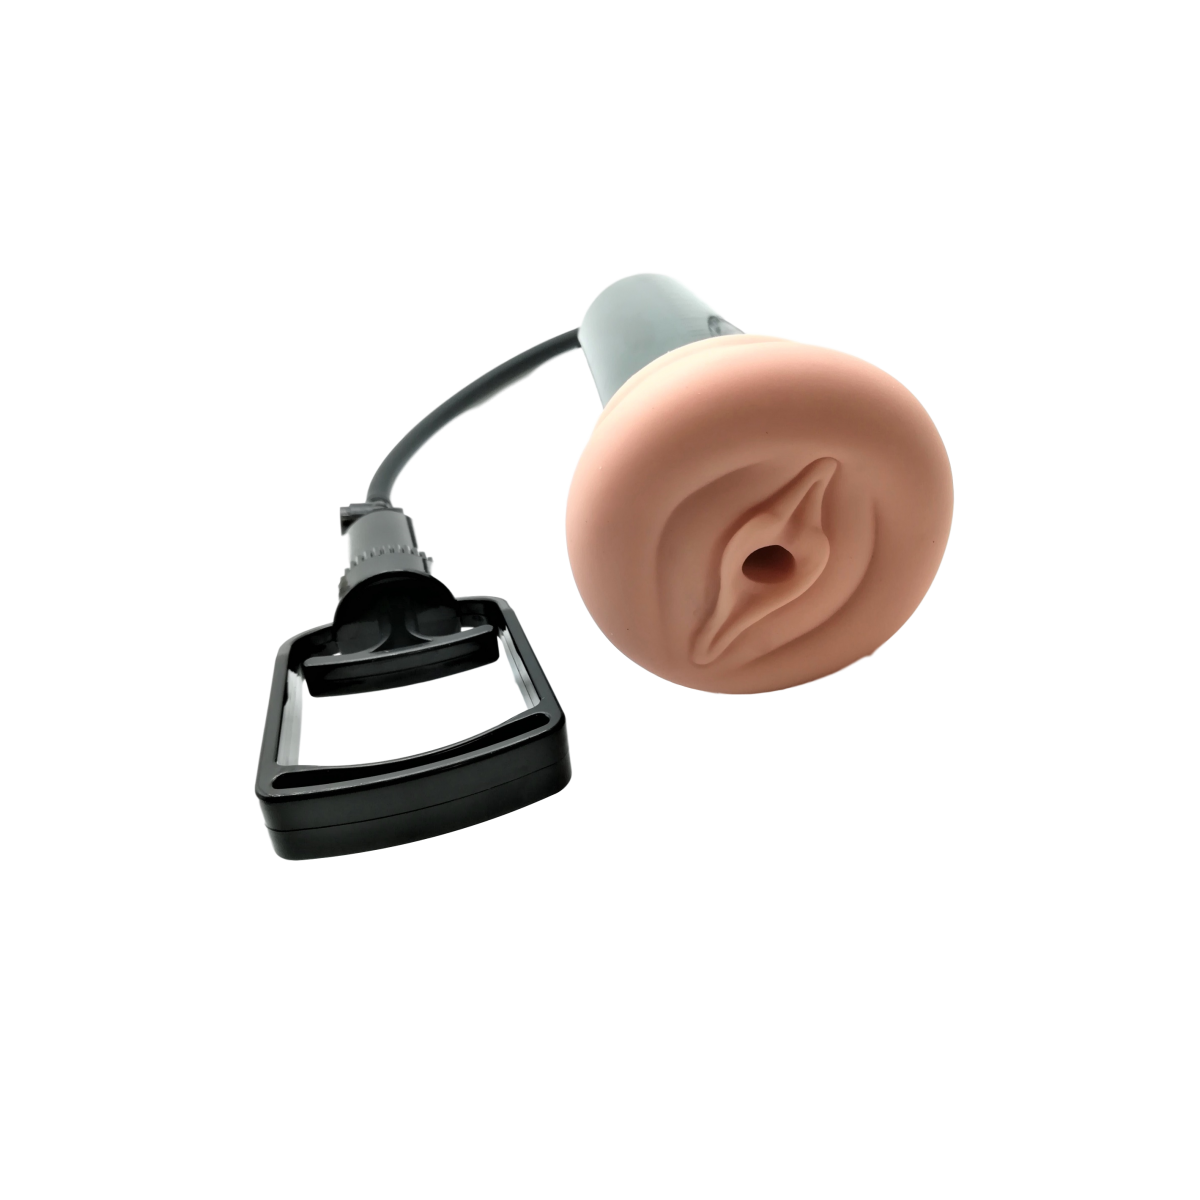 Pompa per pene masturbatore uomo realistico con vagina finta realistico